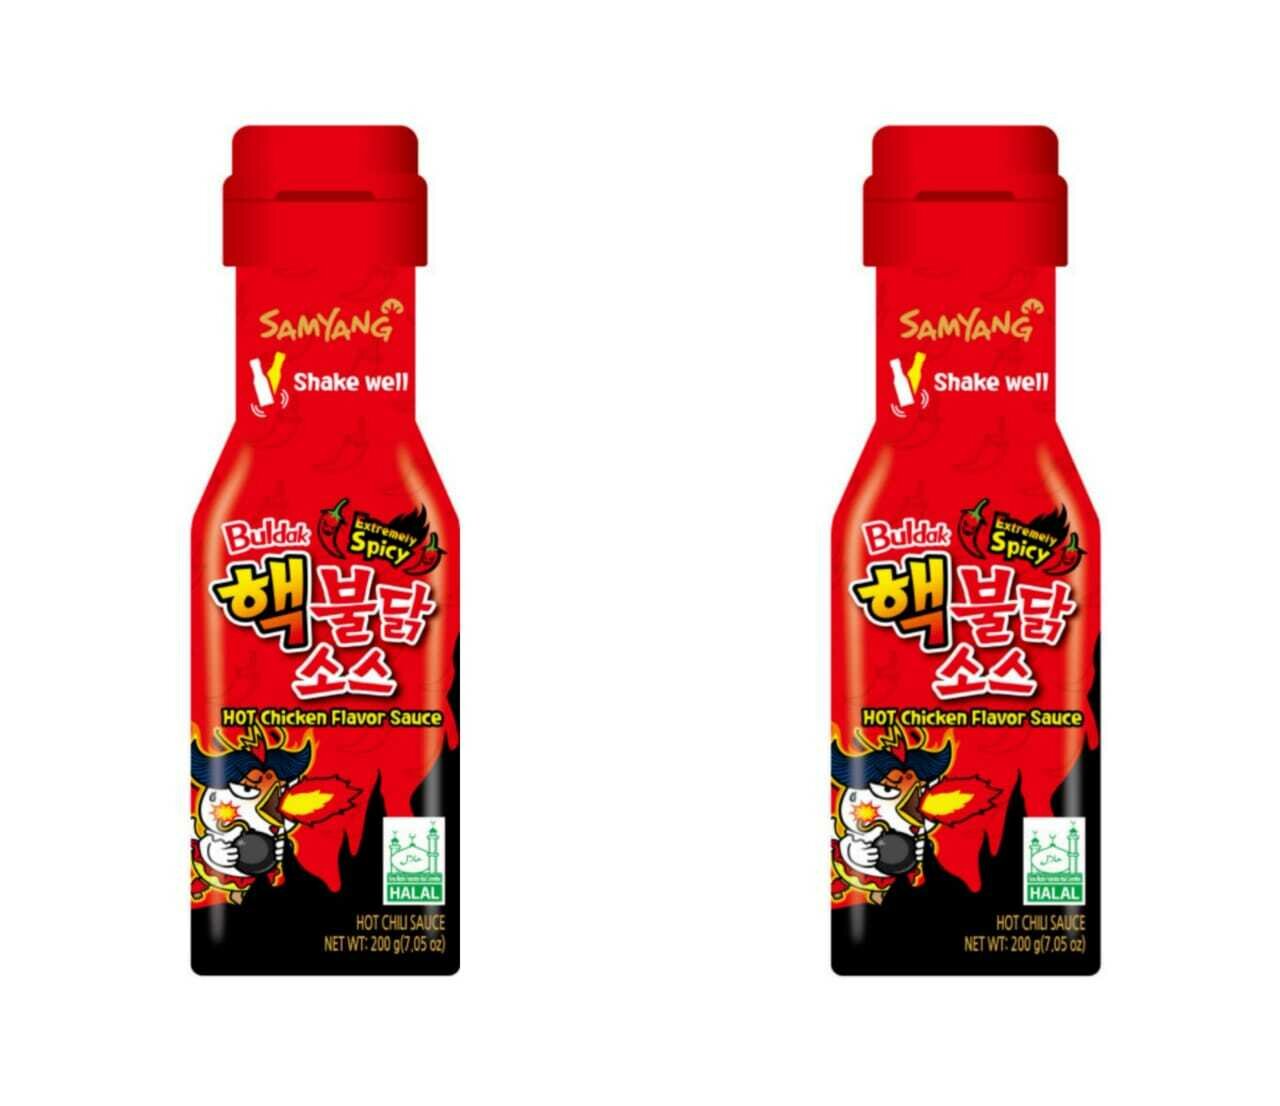 Экстремально острый соус со вкусом курицы Samyang Buldak Extremely spicy Hot Chicken Flavor Sauce 200 г, 2 шт